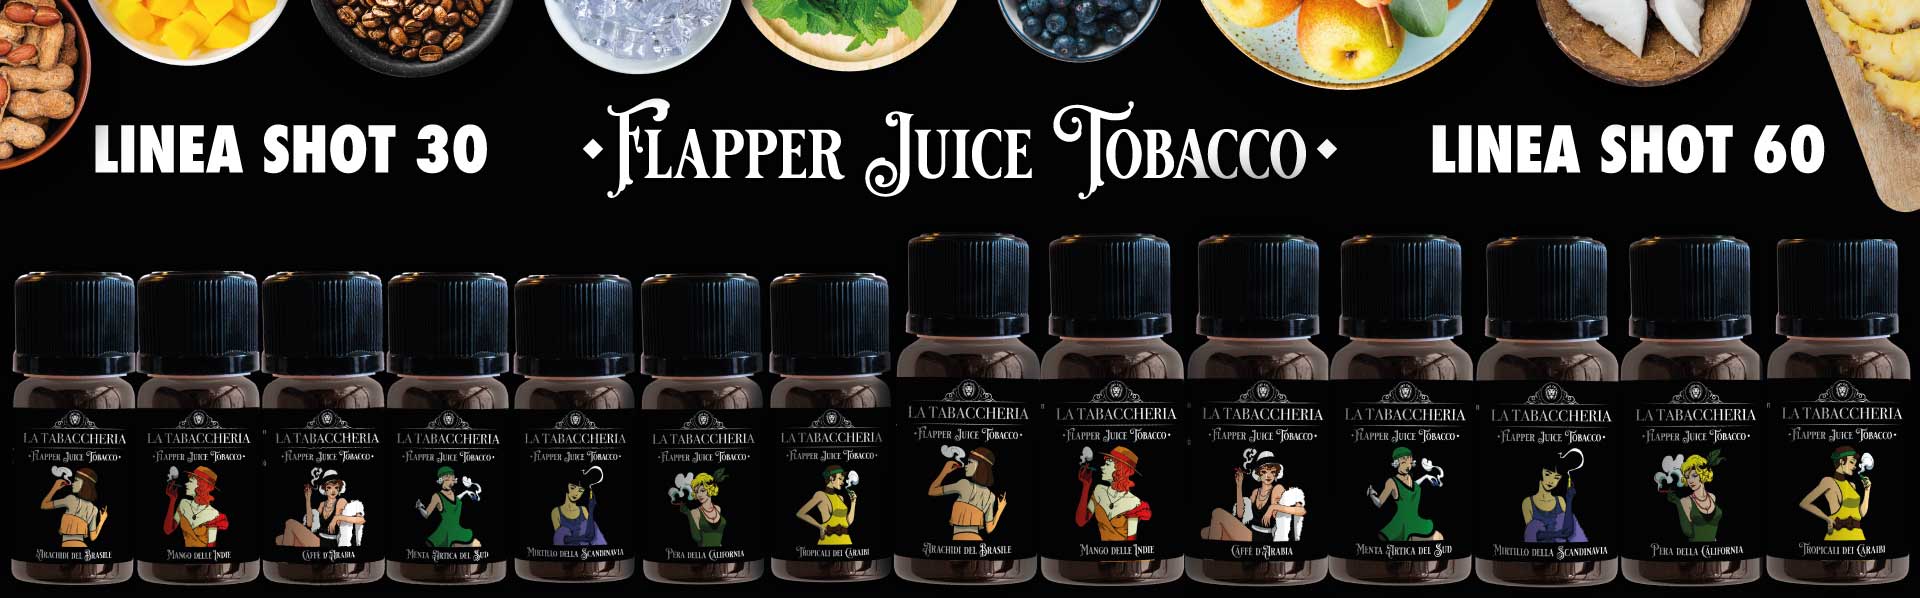 Flapper juice tobacco la tabaccheria